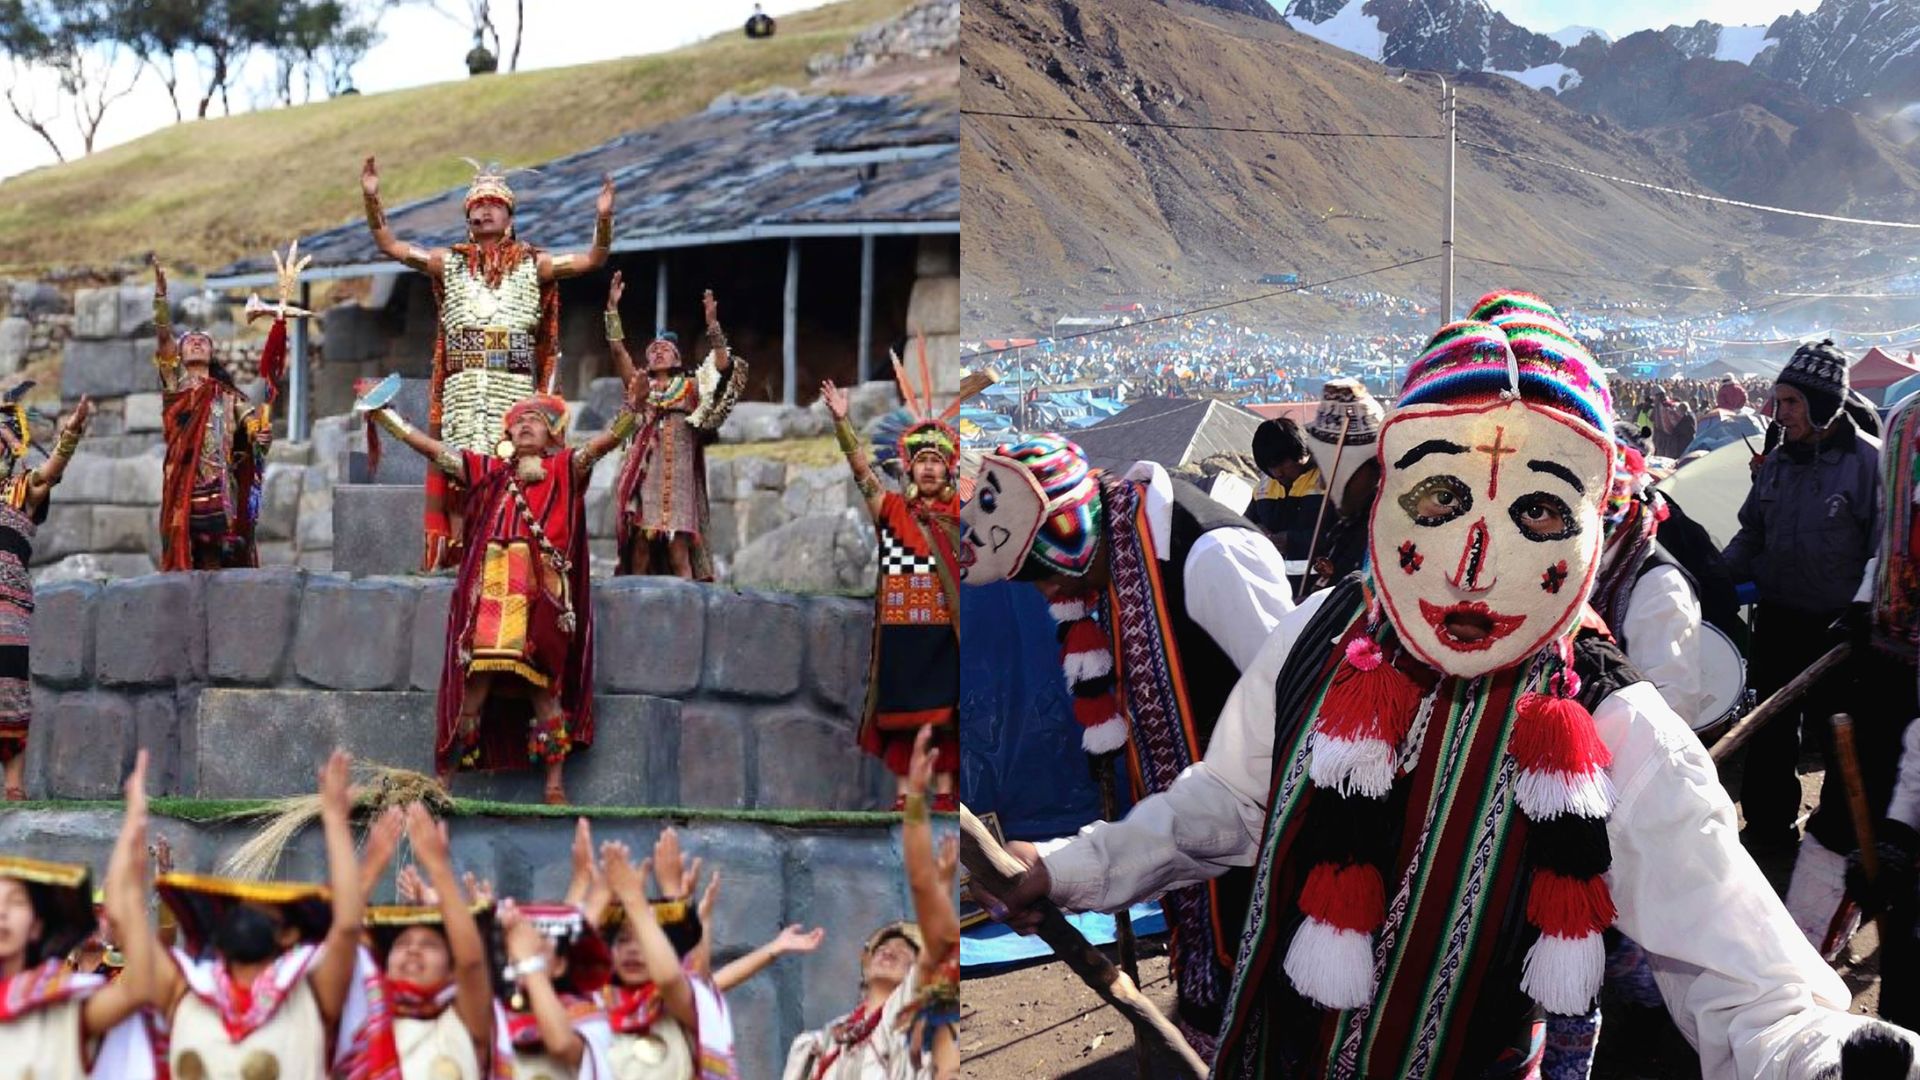 Qué es una fiesta patronal y cuáles son las principales de Perú? - Infobae